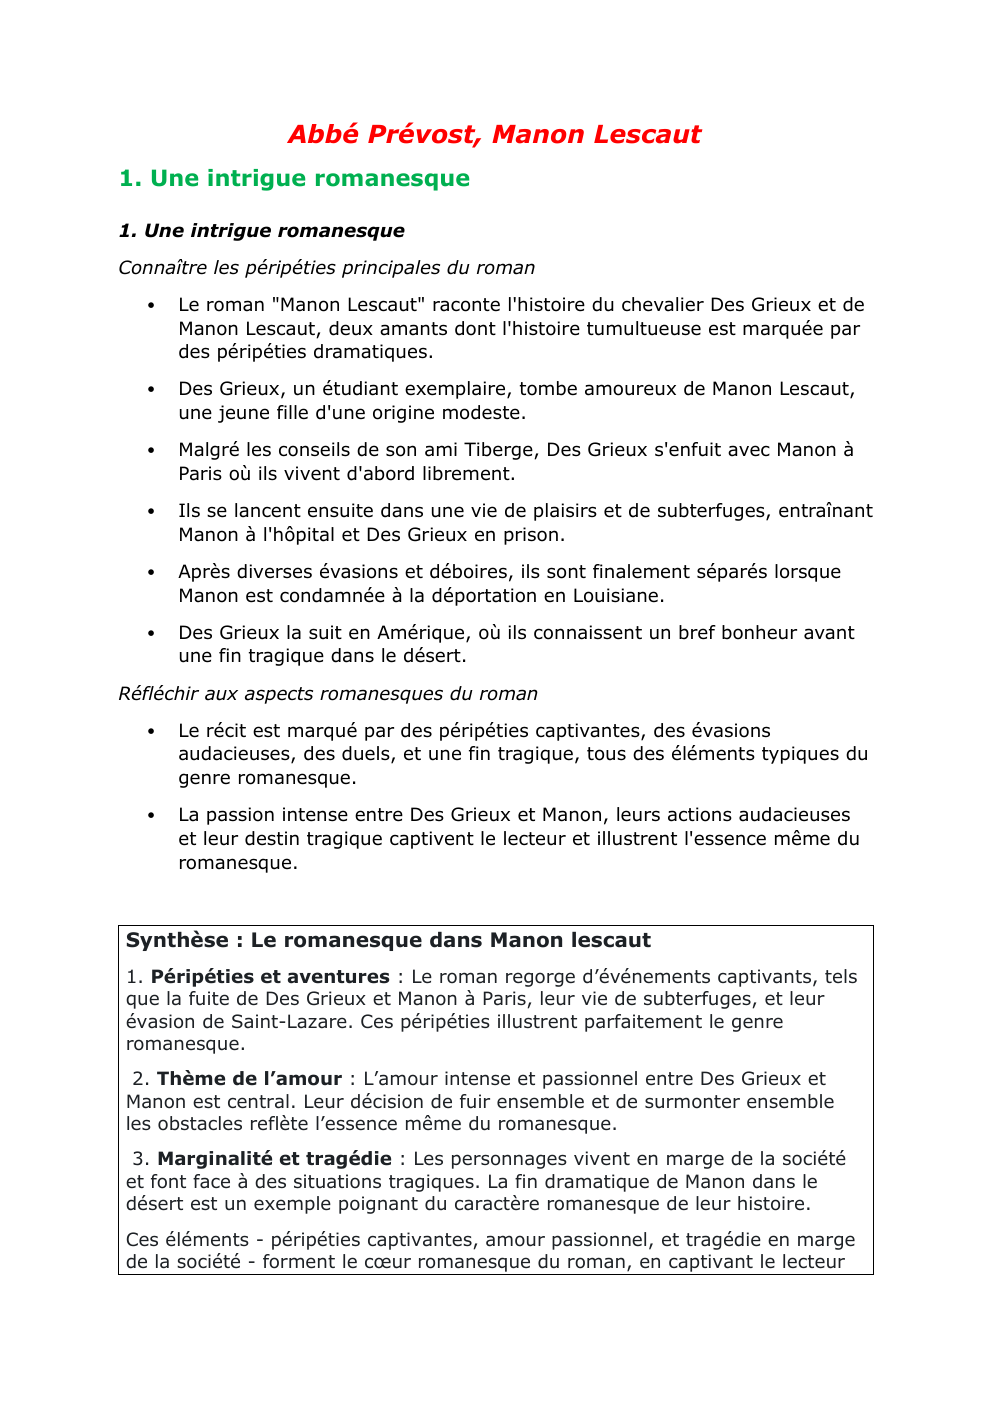 Prévisualisation du document Abbé Prévost, Manon Lescaut (résumé et analyse)